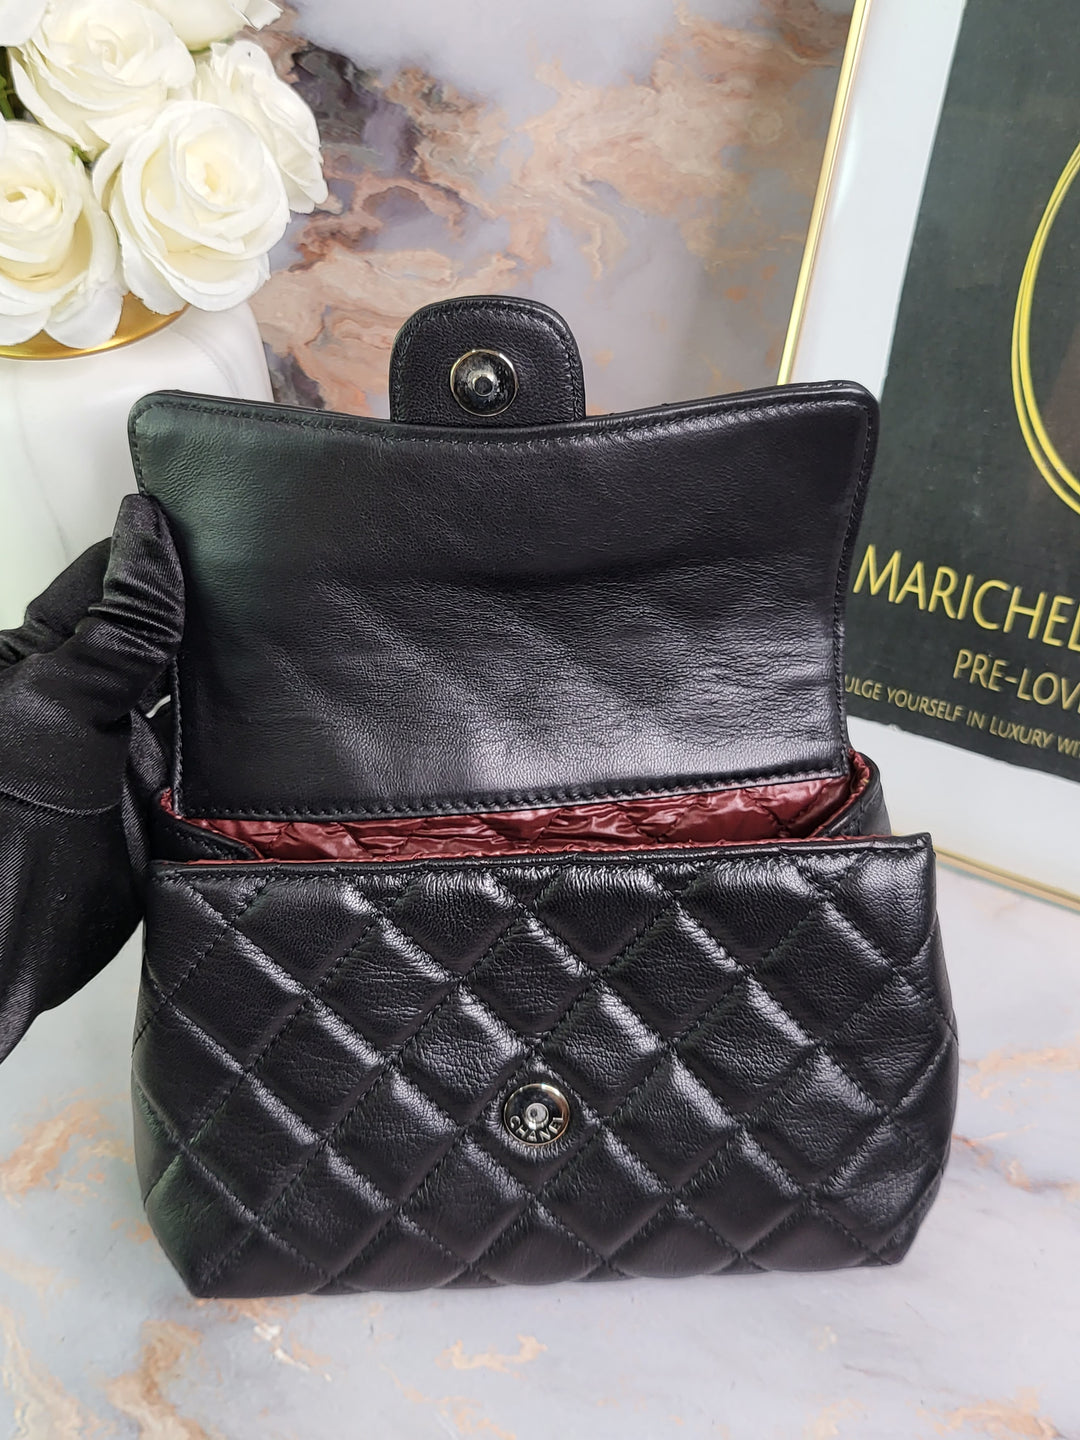 Chanel Lambskin Clutch Bag